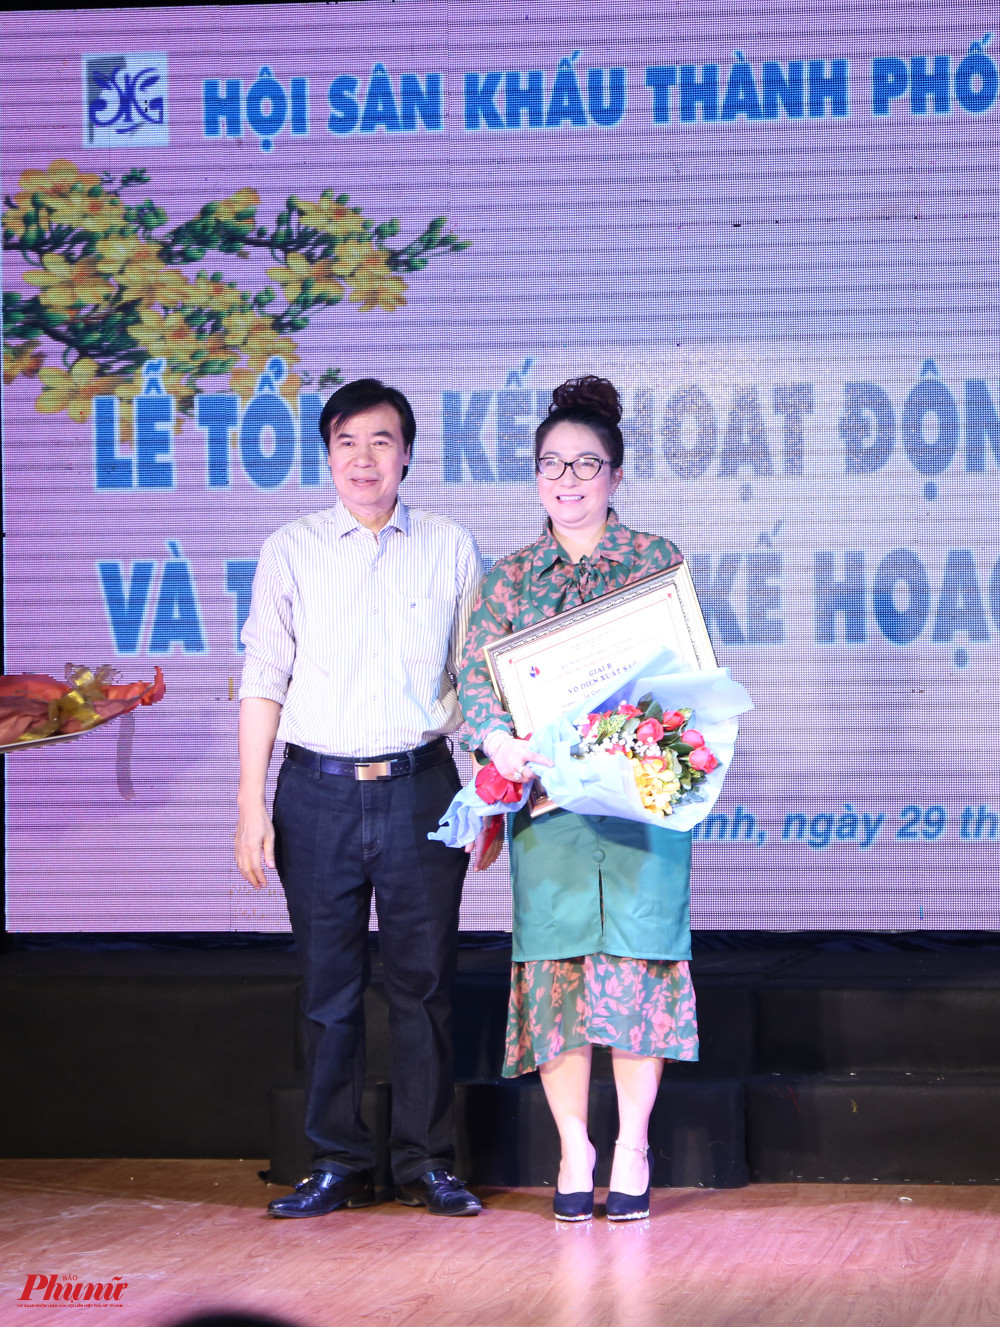 NSƯT Mỹ Hằng đại diện nhà hát cải lương Trần Hữu Trang nhận giải